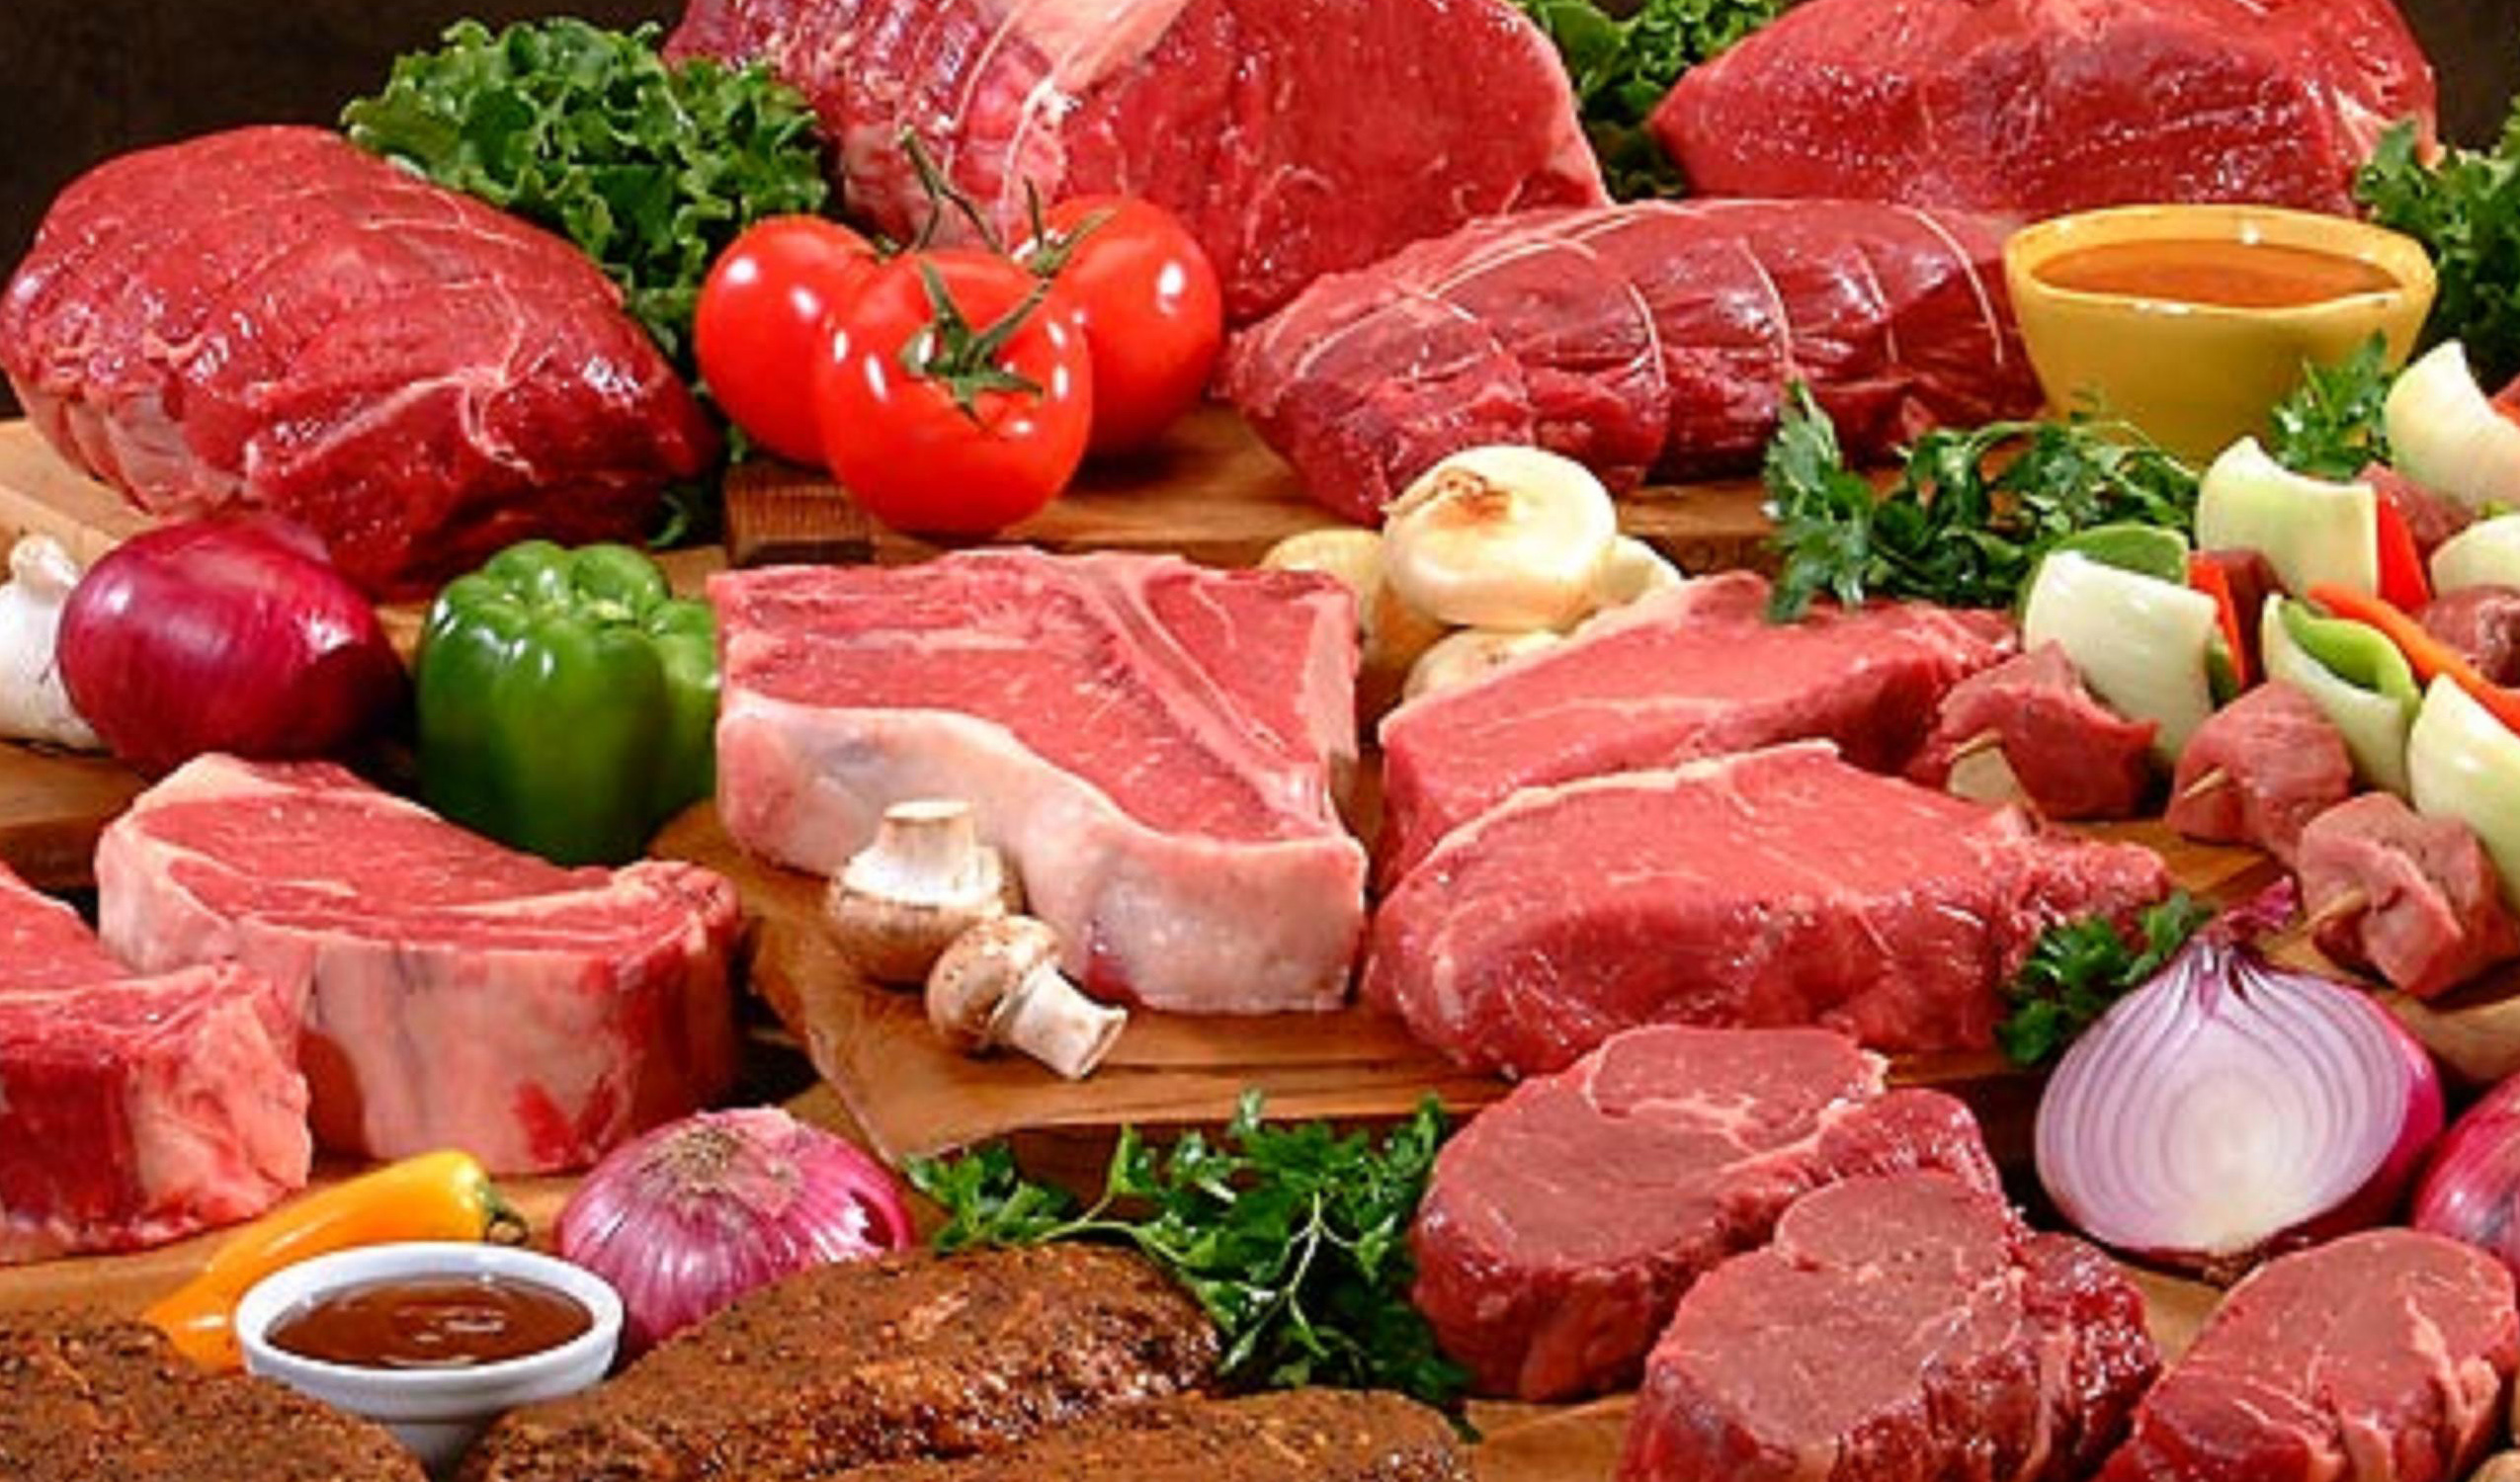 قیمت گوشت حدود ۱۰۰ تا ۱۵۰ هزارتومان کاهش می یابد/ صادرات گوشت ممنوع است